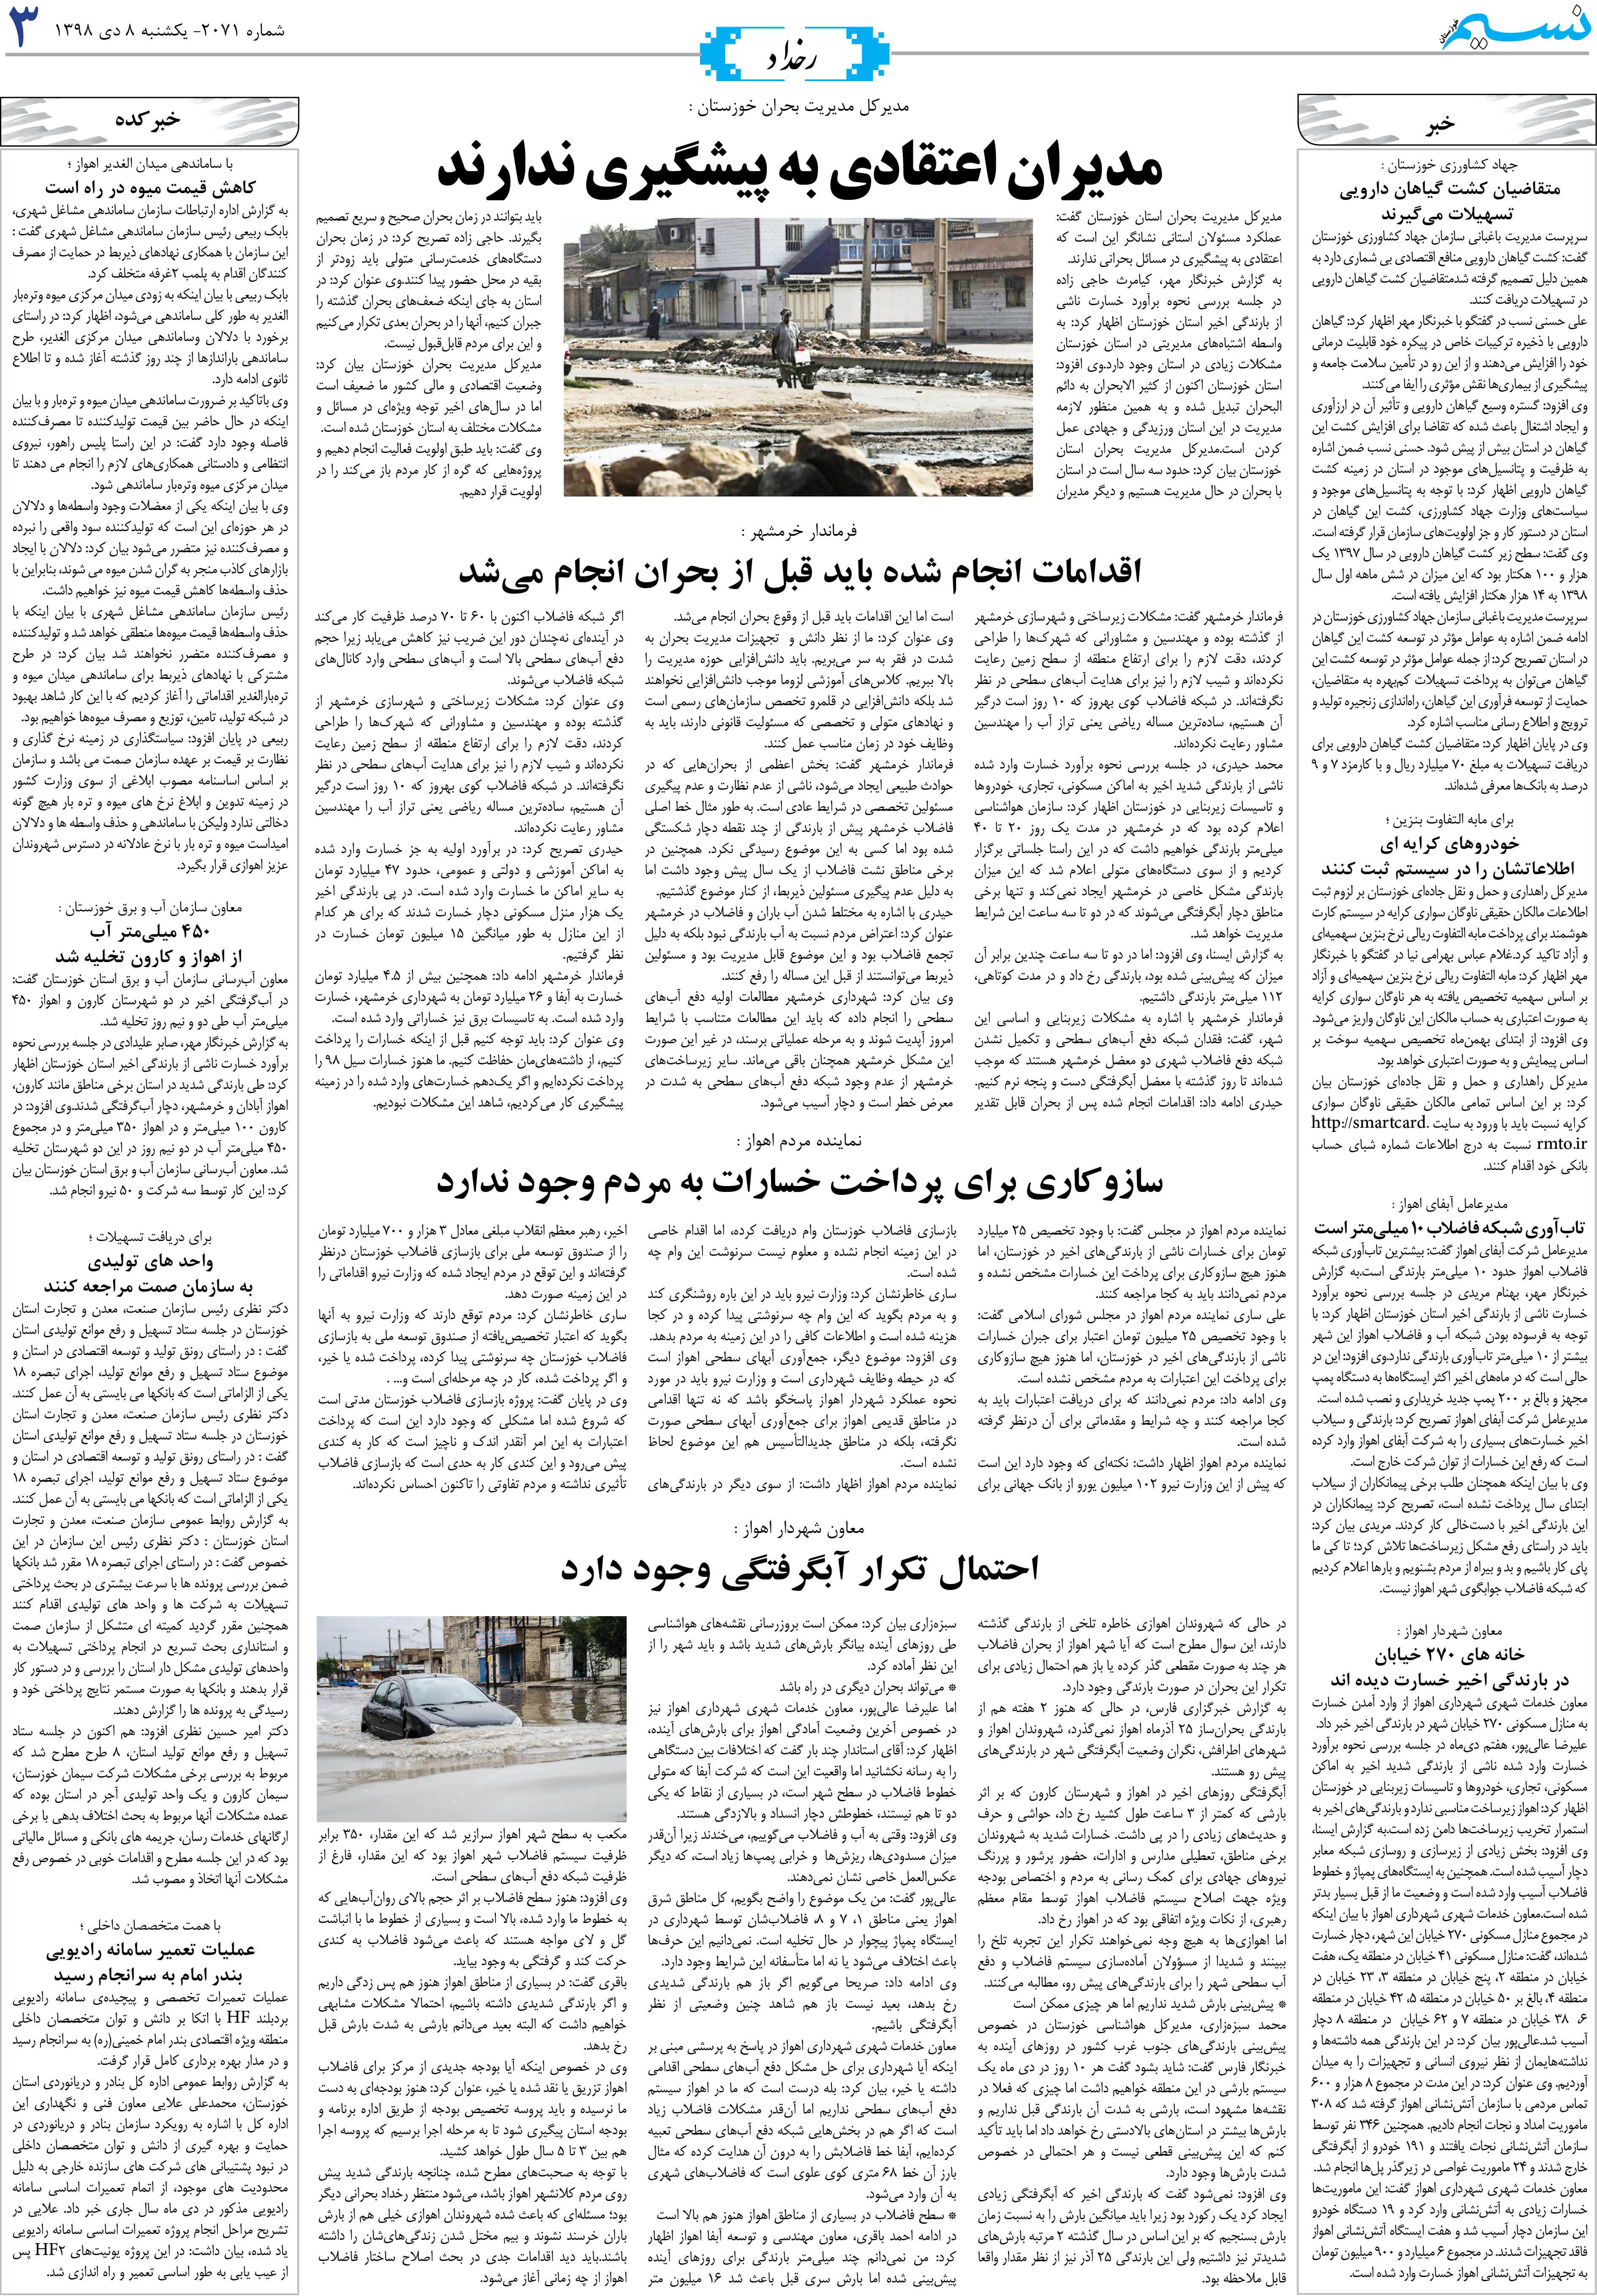 صفحه رخداد روزنامه نسیم شماره 2071